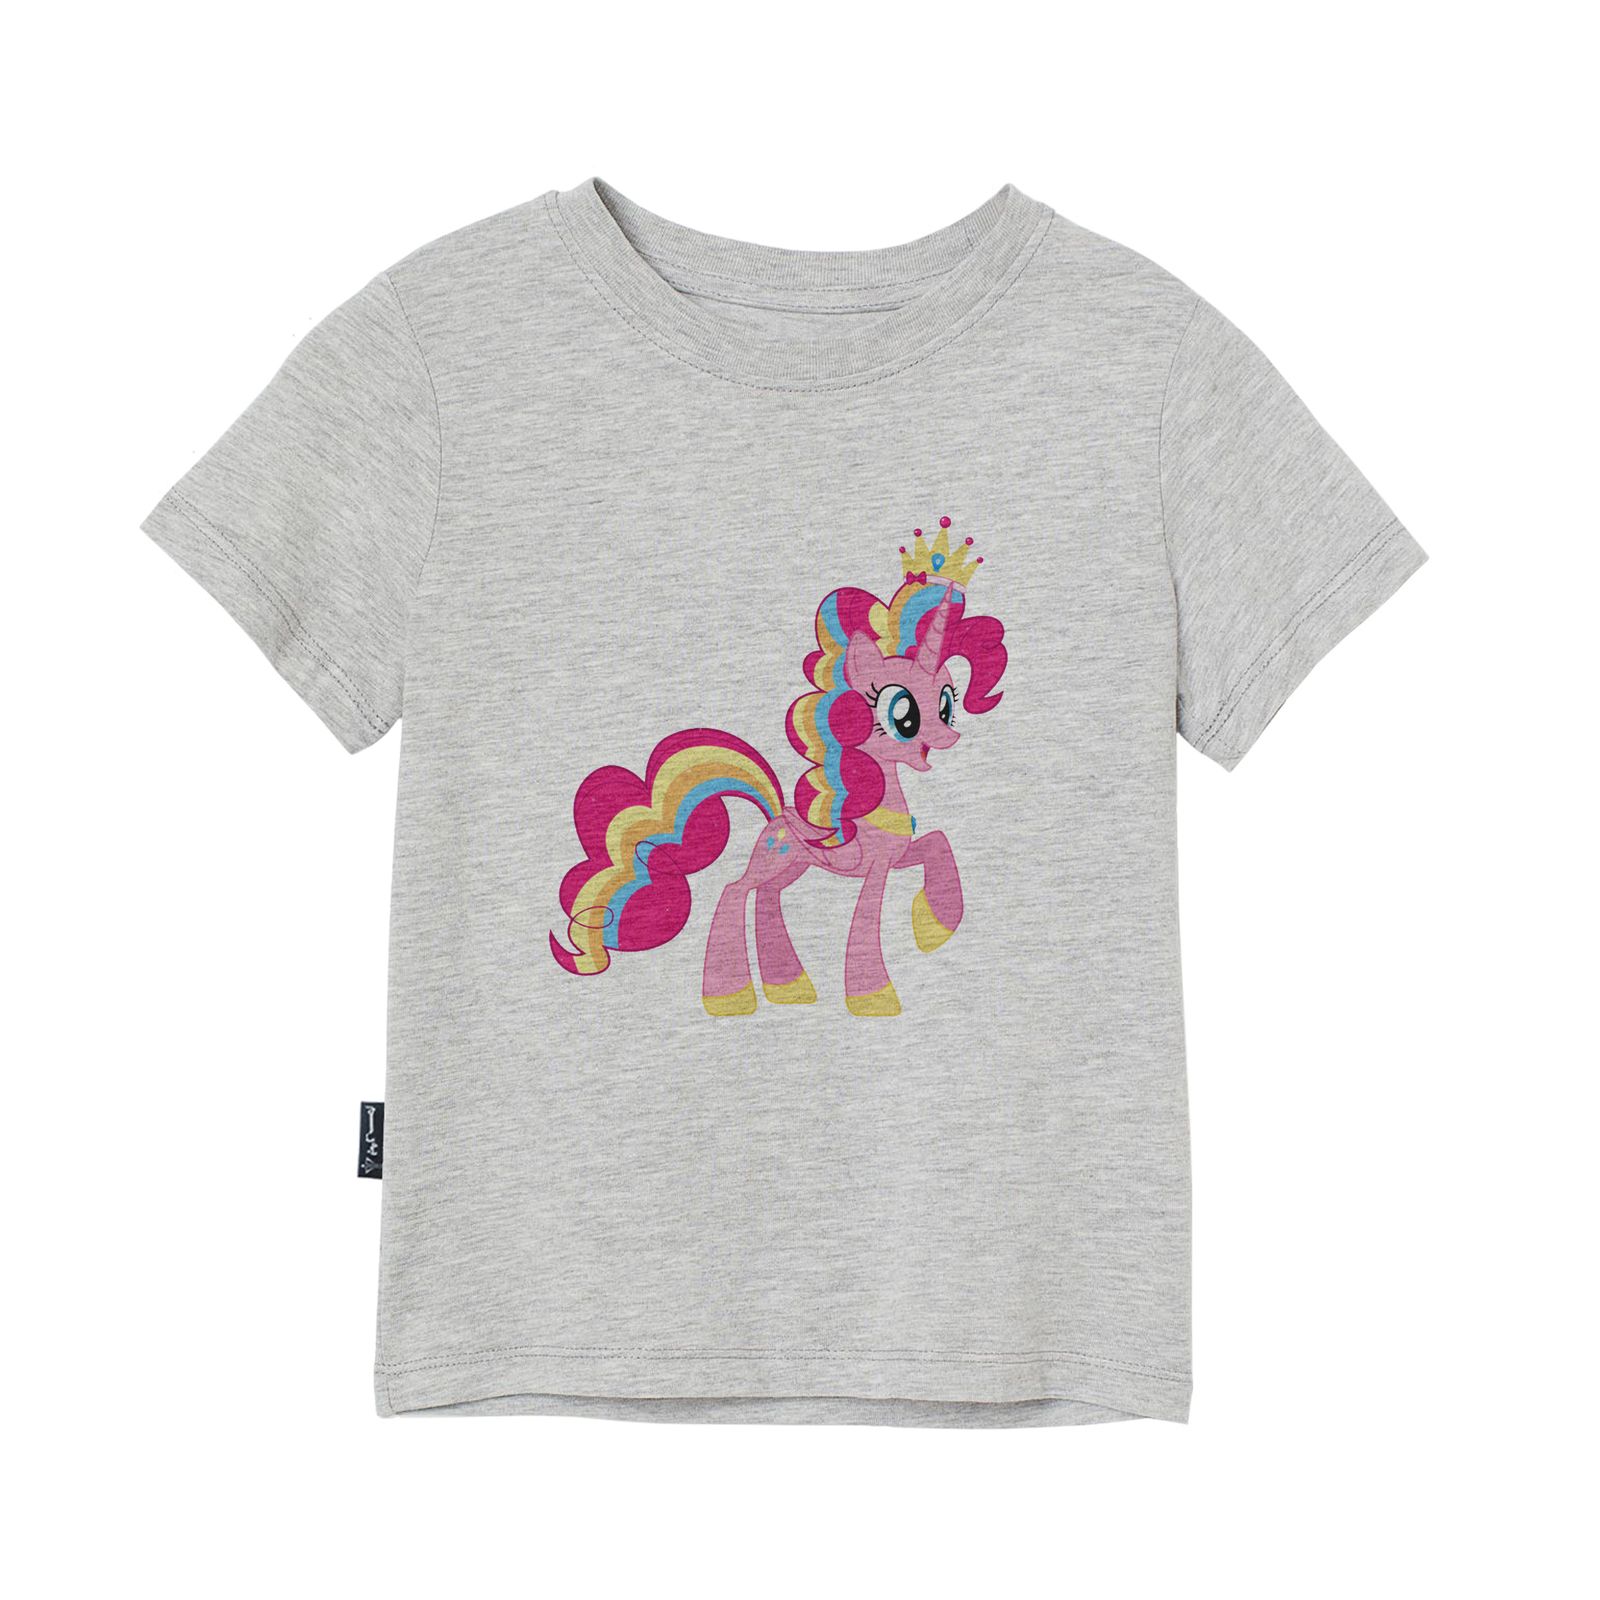 تی شرت آستین کوتاه دخترانه به رسم مدل اسب کد 110016 -  - 3